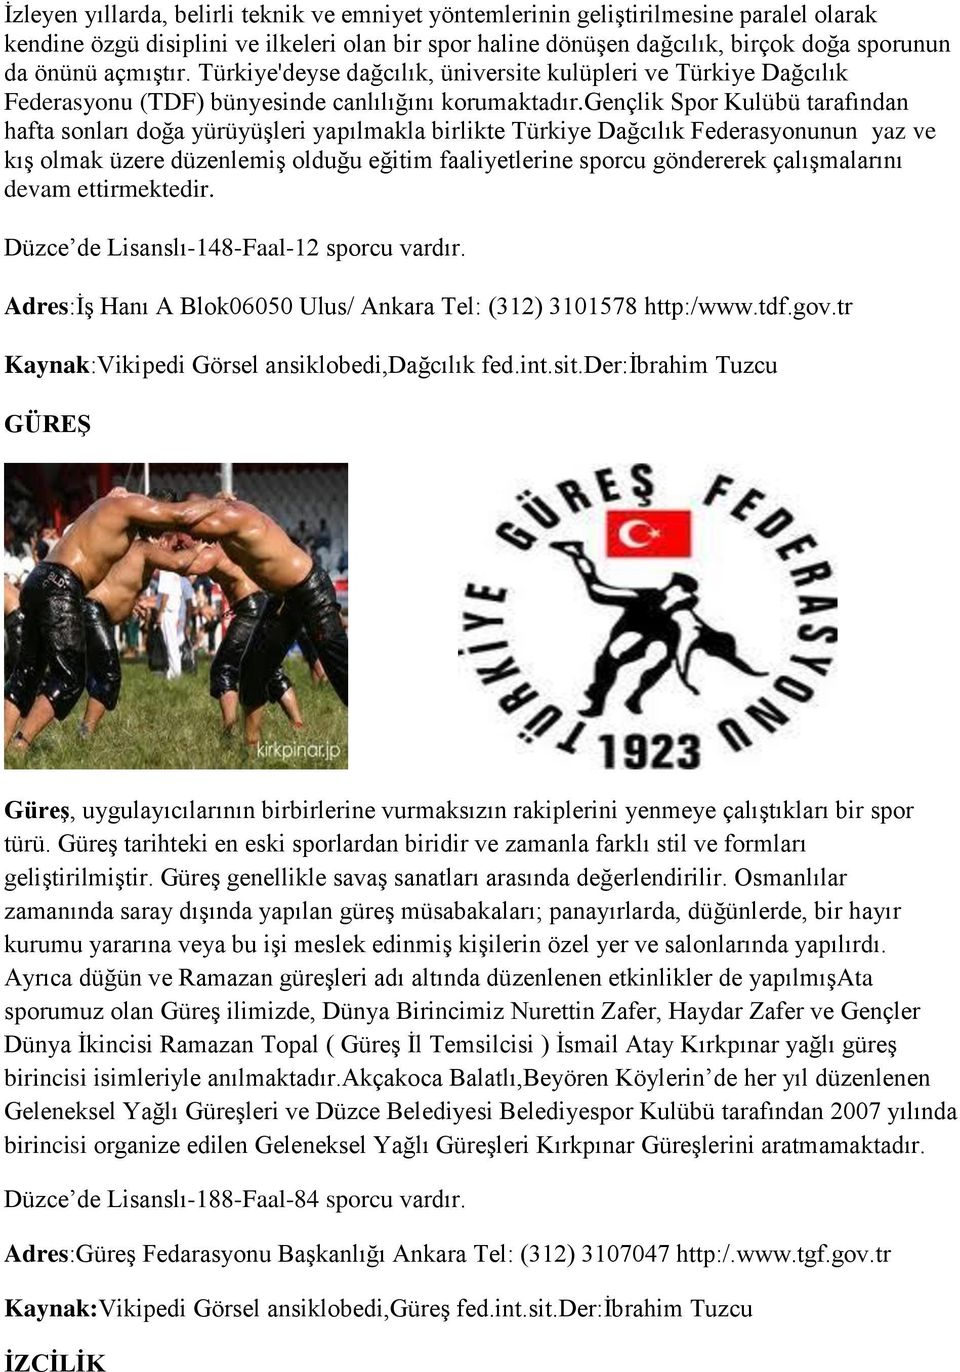 gençlik Spor Kulübü tarafından hafta sonları doğa yürüyüģleri yapılmakla birlikte Türkiye Dağcılık Federasyonunun yaz ve kıģ olmak üzere düzenlemiģ olduğu eğitim faaliyetlerine sporcu göndererek